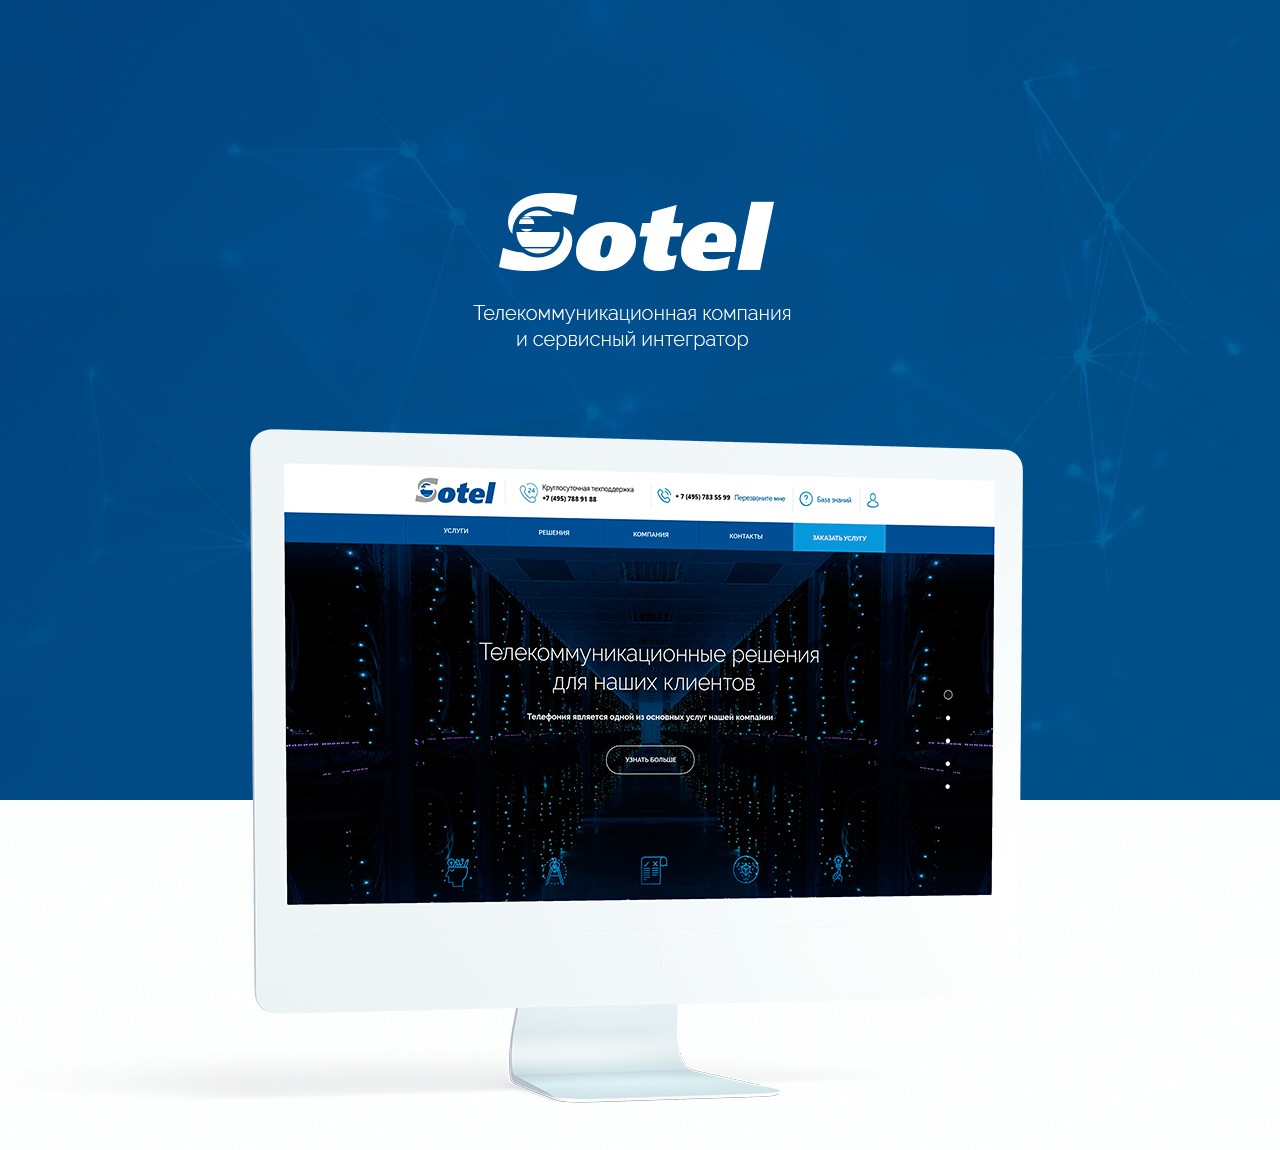 Sotel
Фирменный стиль / Аналитика / Дизайн / Фронтенд-программирование / Бэкенд-программирование
© No Logo Studio